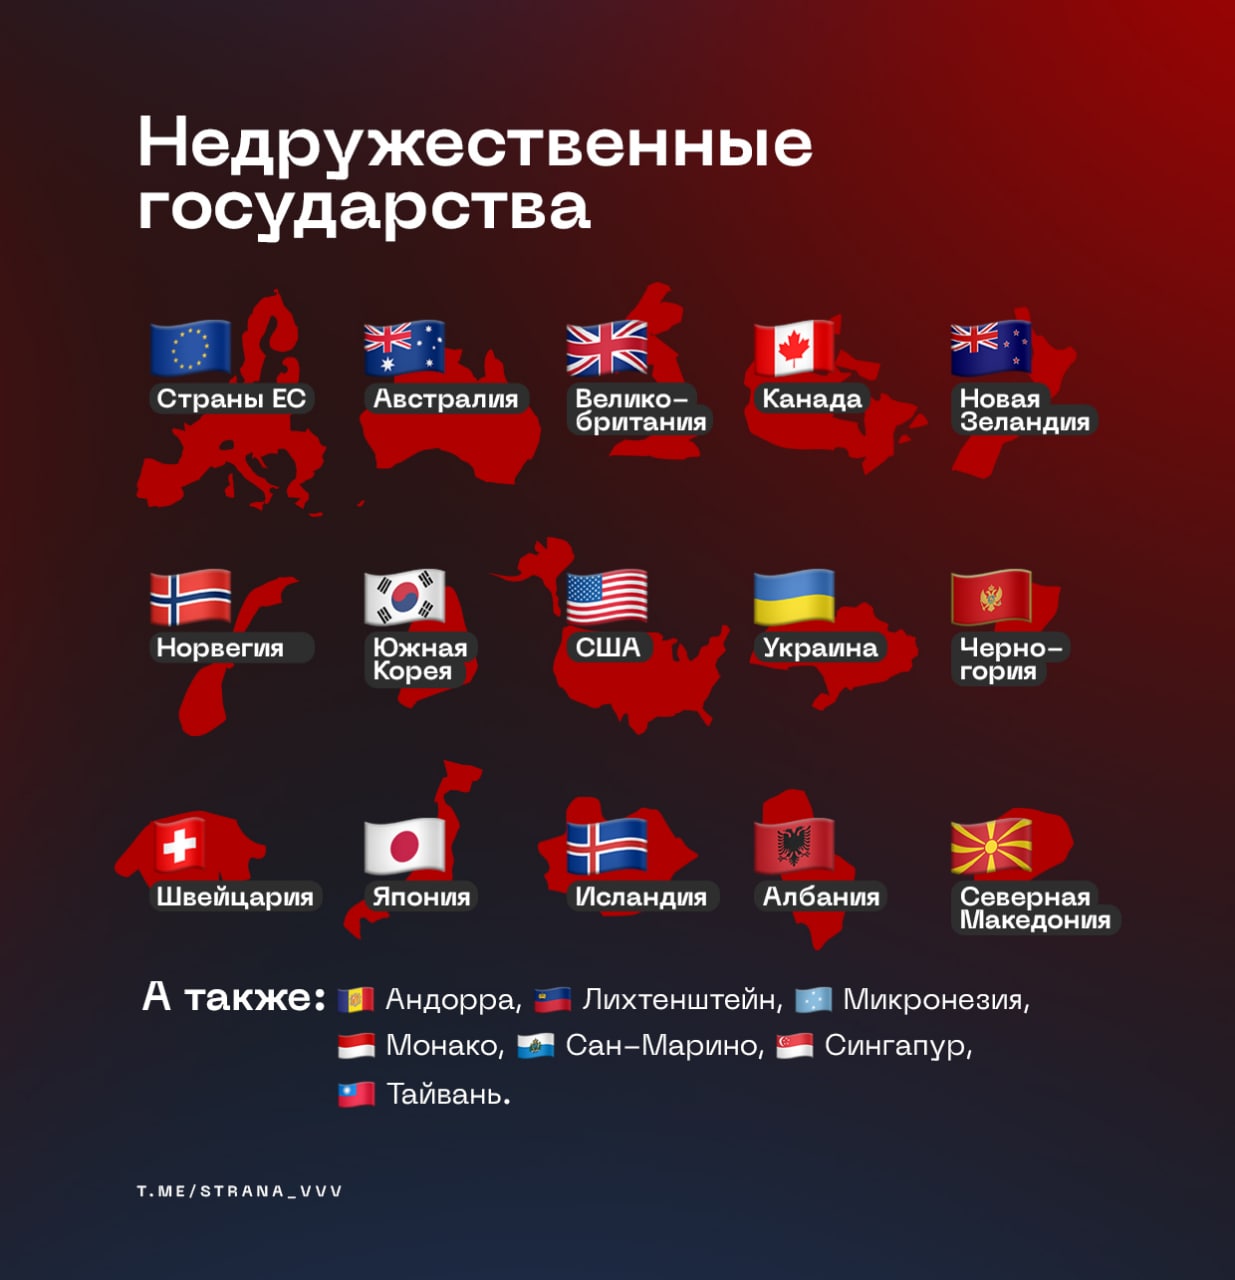 Какие страны недружественные. Недружественные государства. Список недружественных стран России на сегодня. Недружественные страны для России на сегодня.